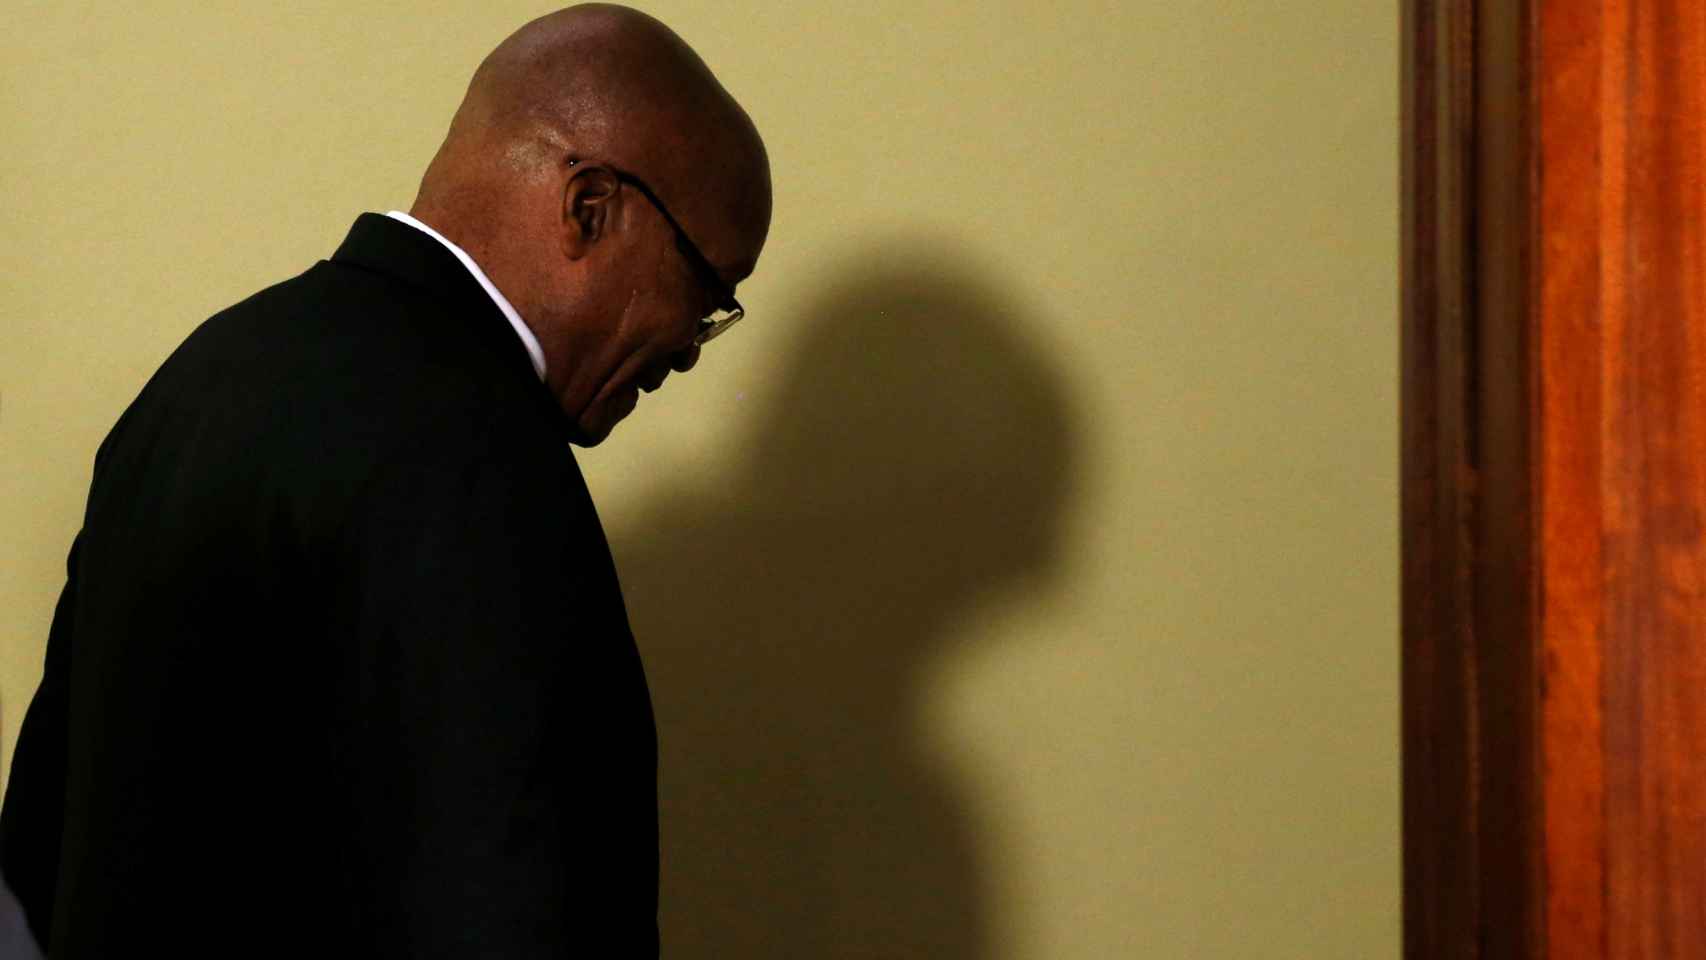 Jacob Zuma tras presentar su renuncia.